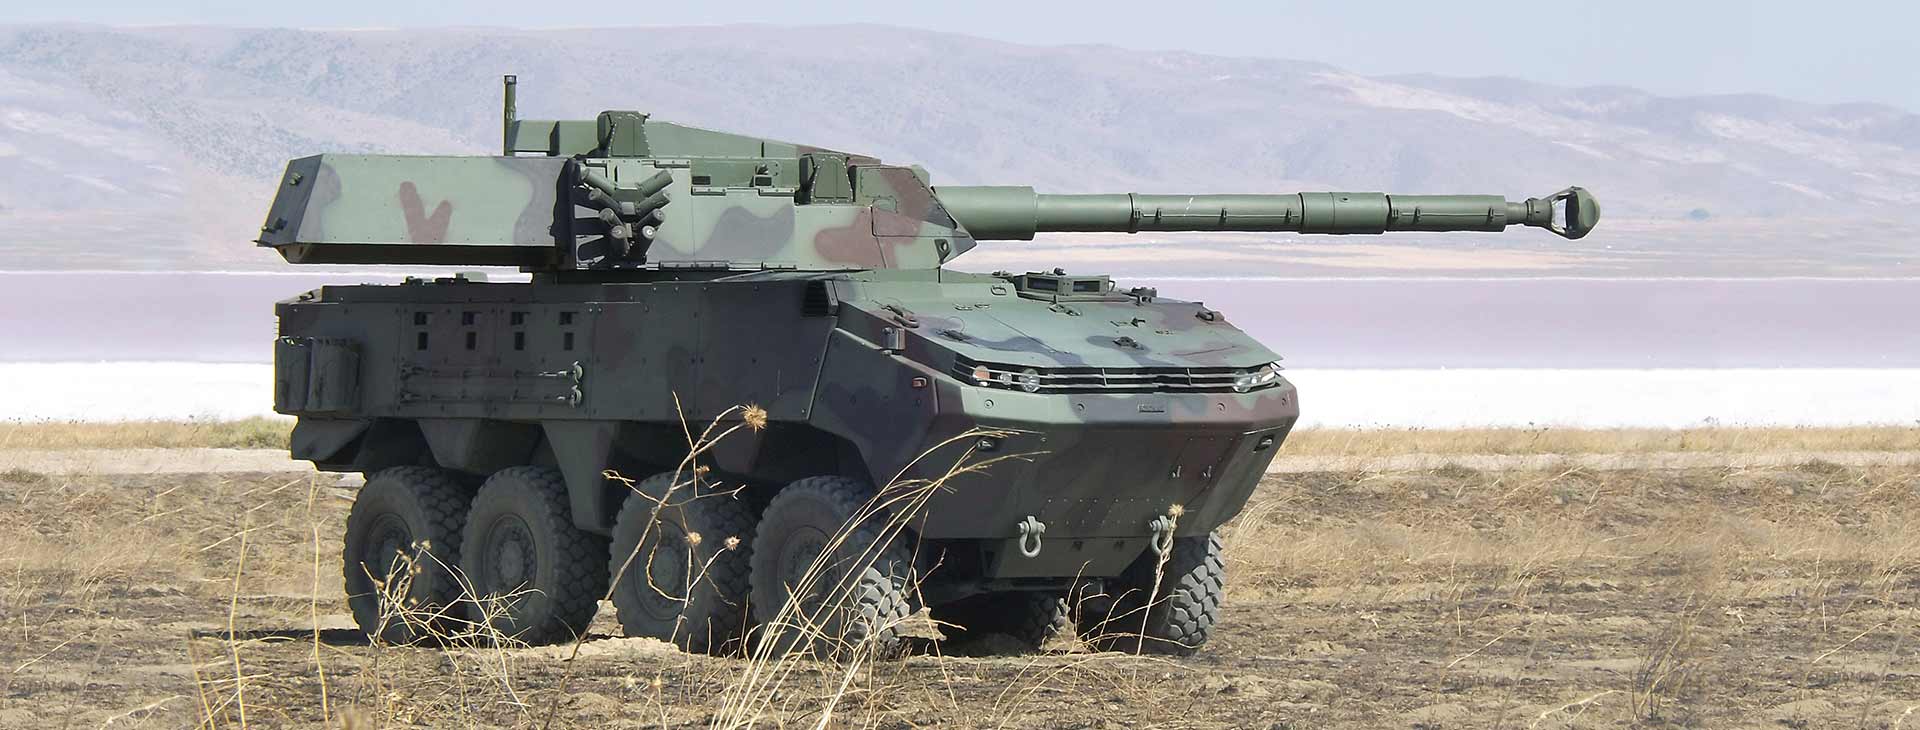 Η τουρκική Otokar παρουσίασε το τροχοφόρο τεθωρακισμένο όχημα ARMA II